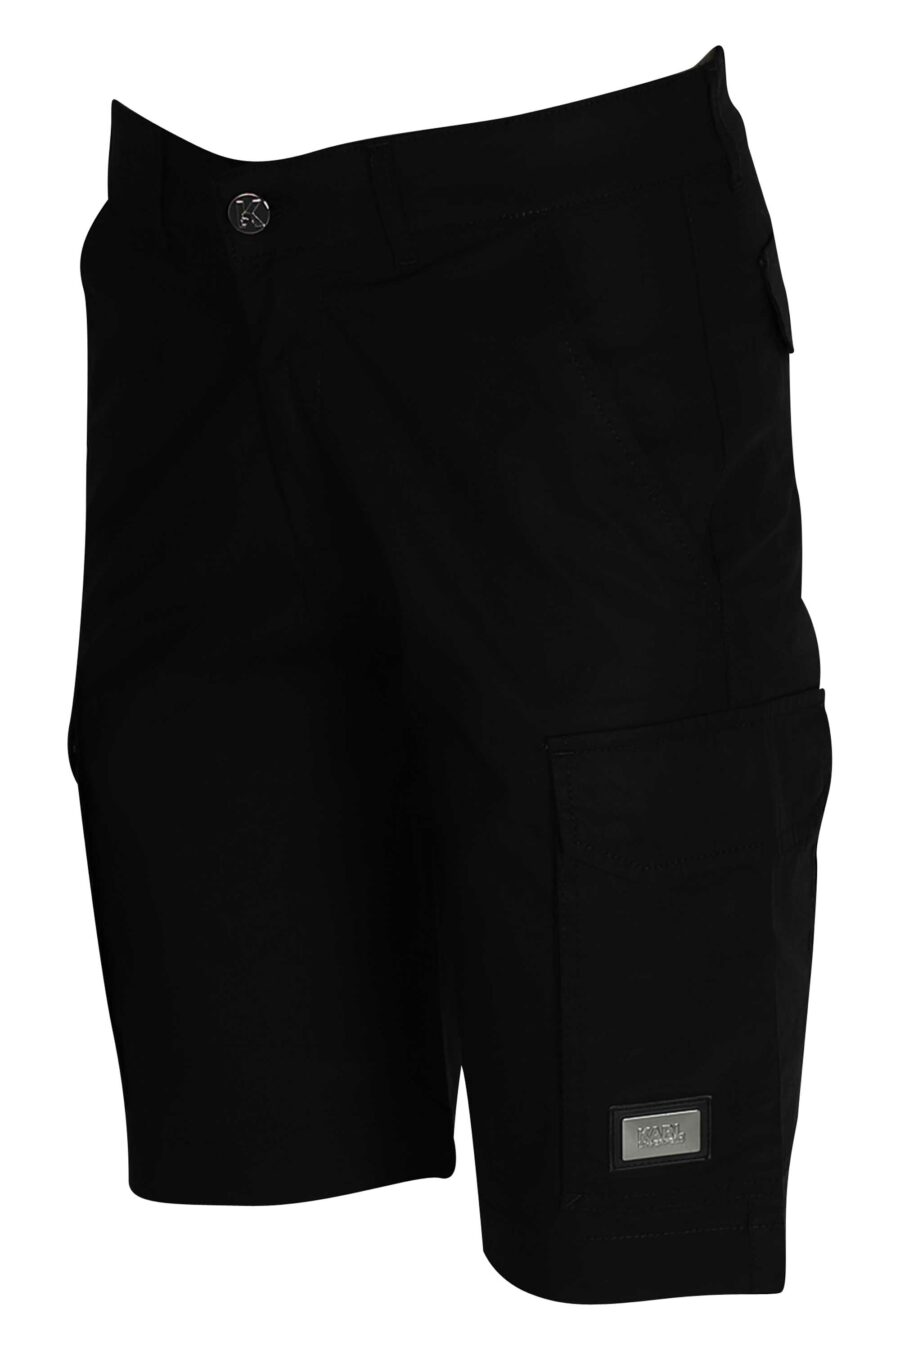 Schwarze Cargo-Shorts mit Logo - 4062226166942 3